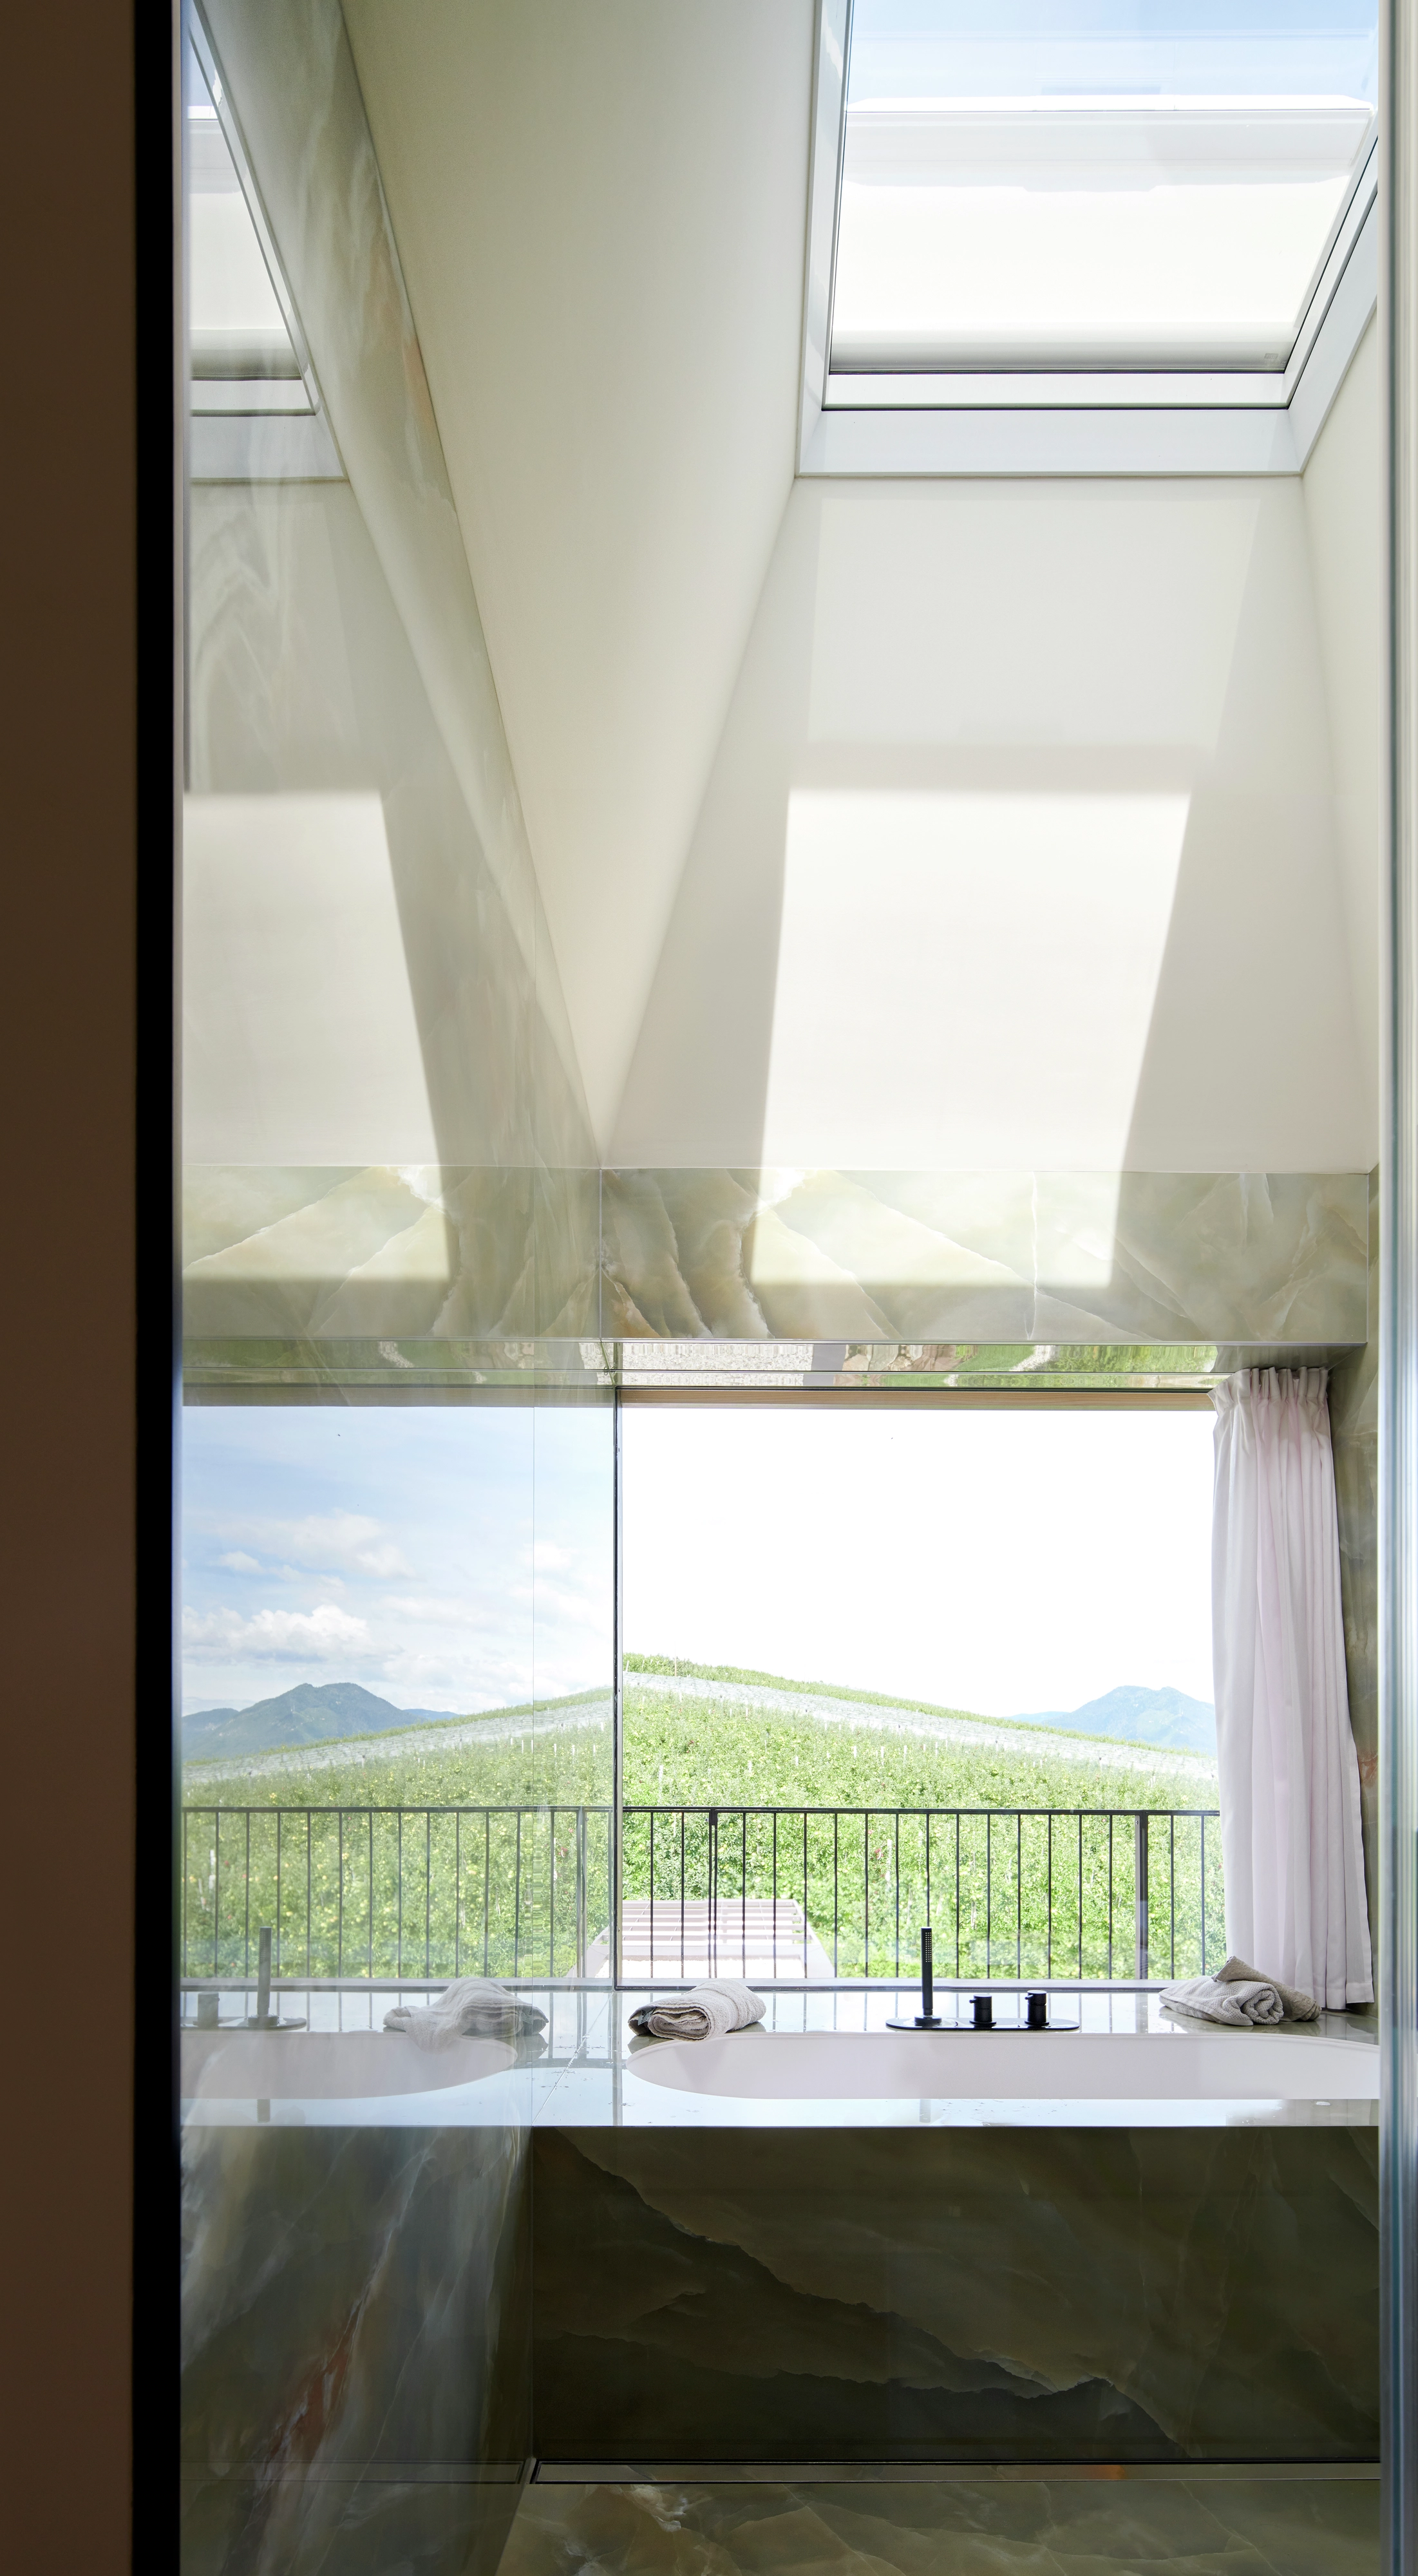 Camera da letto moderna con finestra per tetti VELUX che si affaccia su un paesaggio verde e montagne.